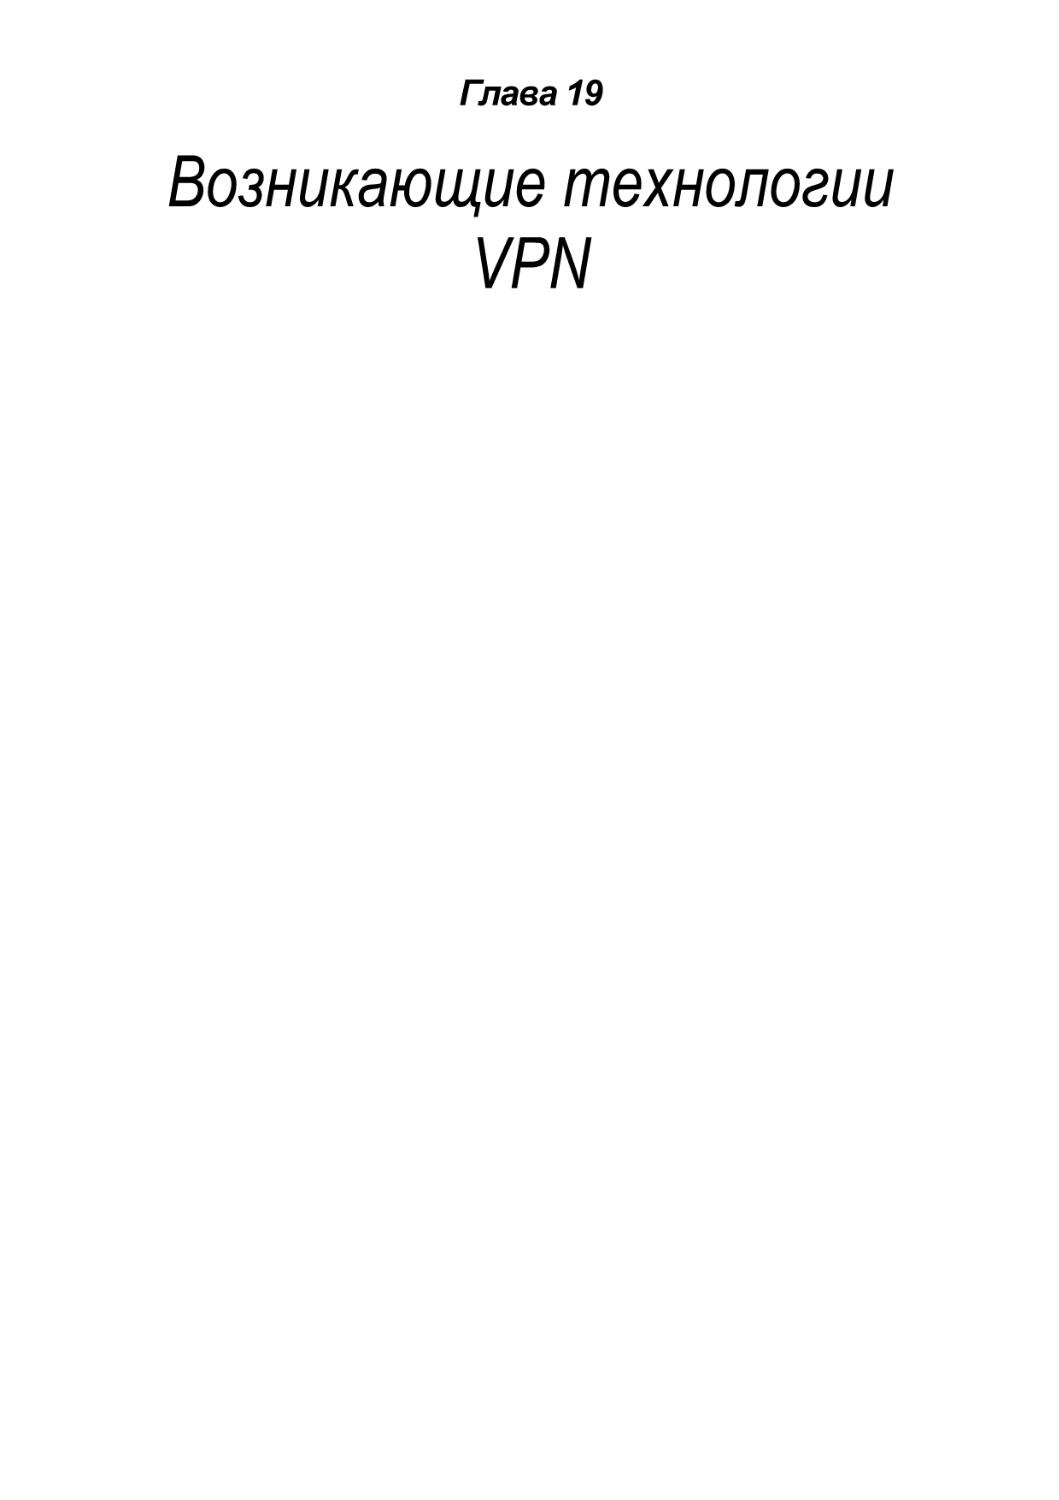 Возникающие технологии VPN